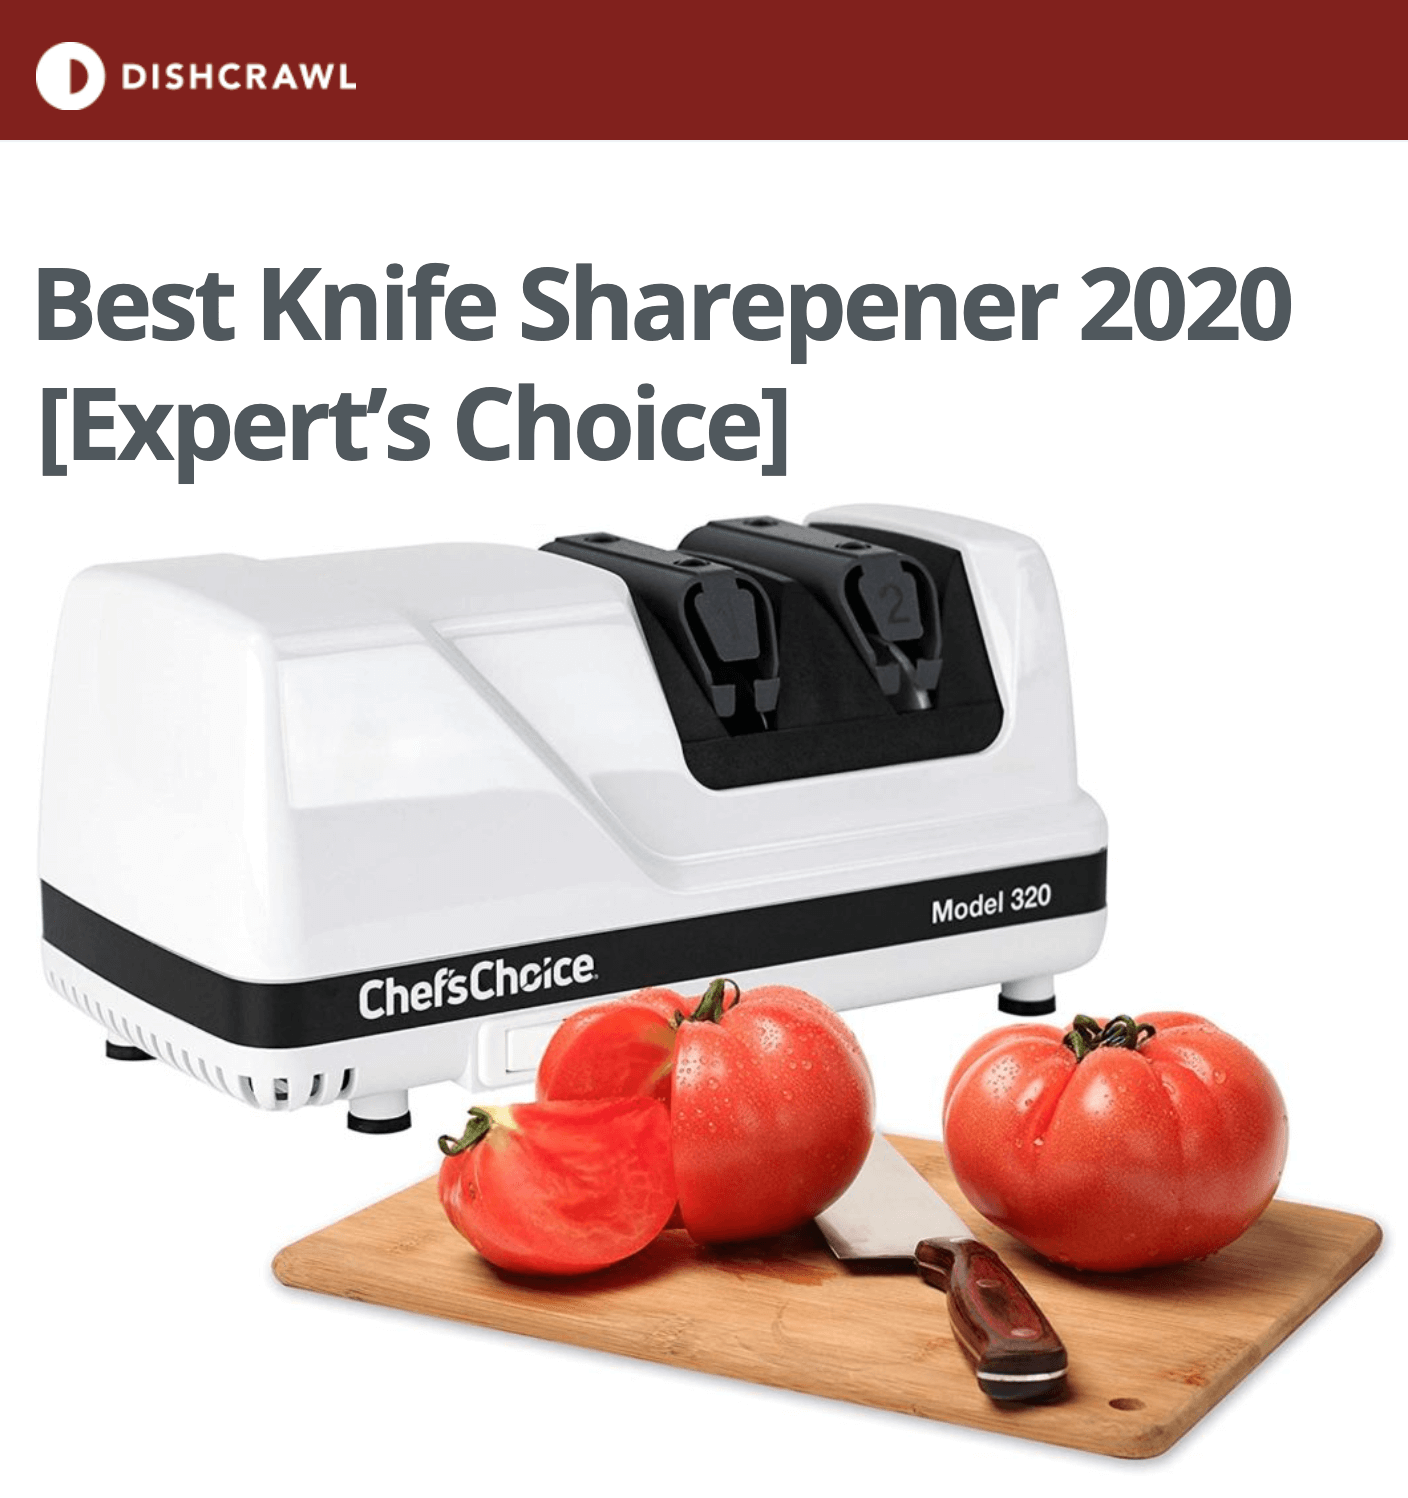 dishcrawl.com's knife sharpener guide